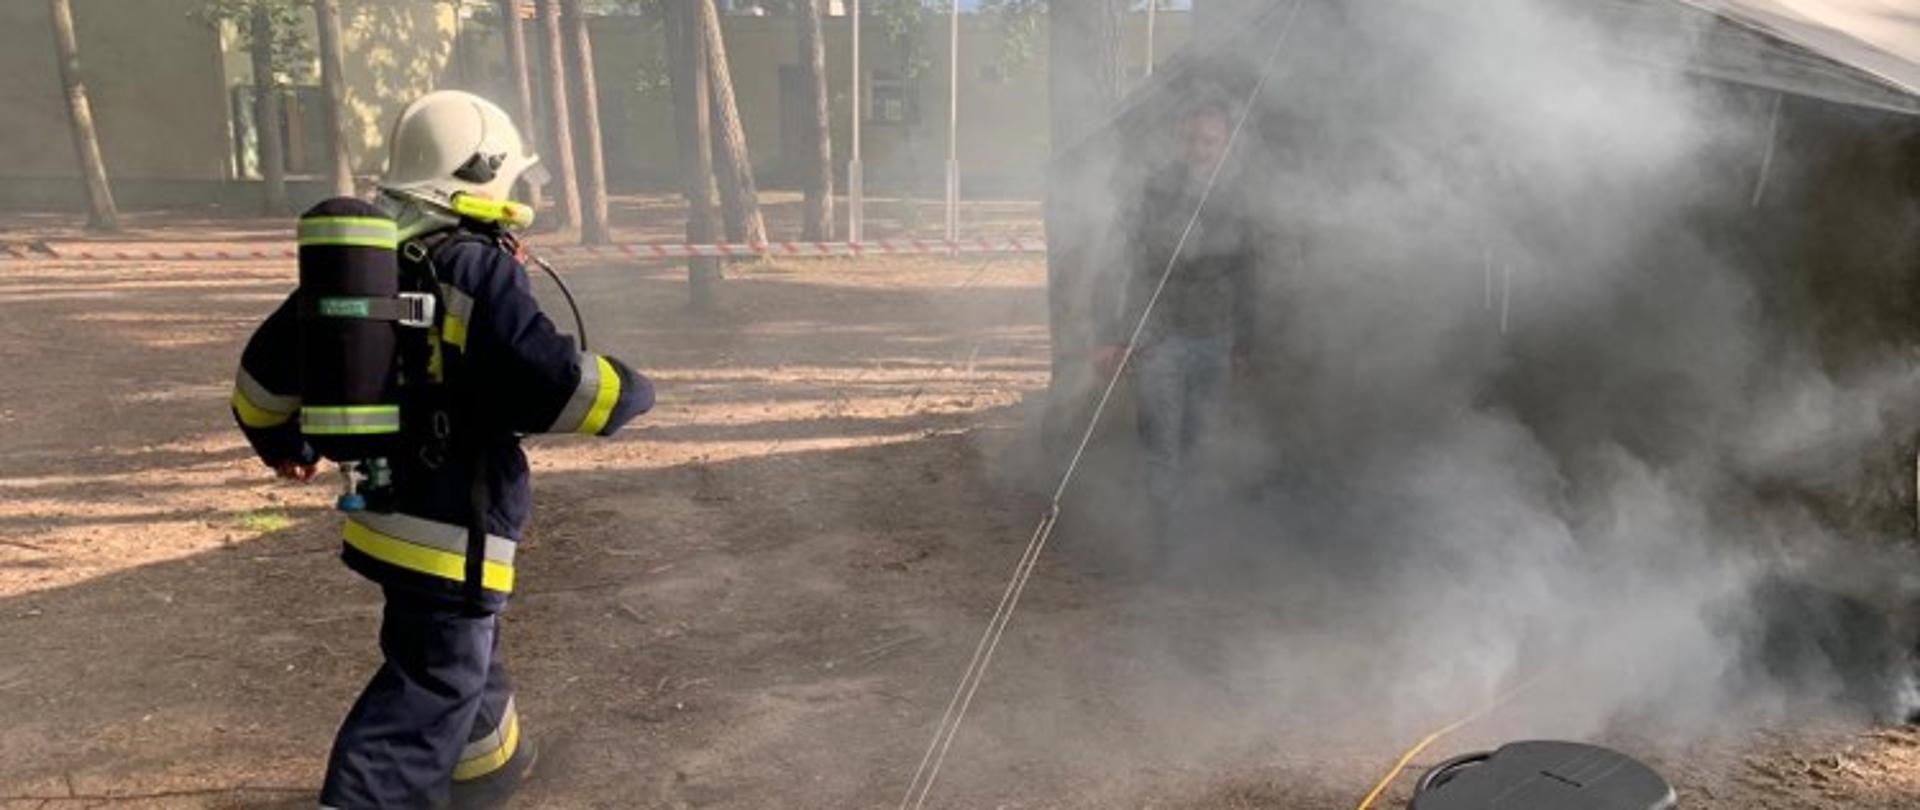 Zdjęcie przedstawia strażaka w umundurowaniu bojowym, który wchodzi do zadymionego namiotu